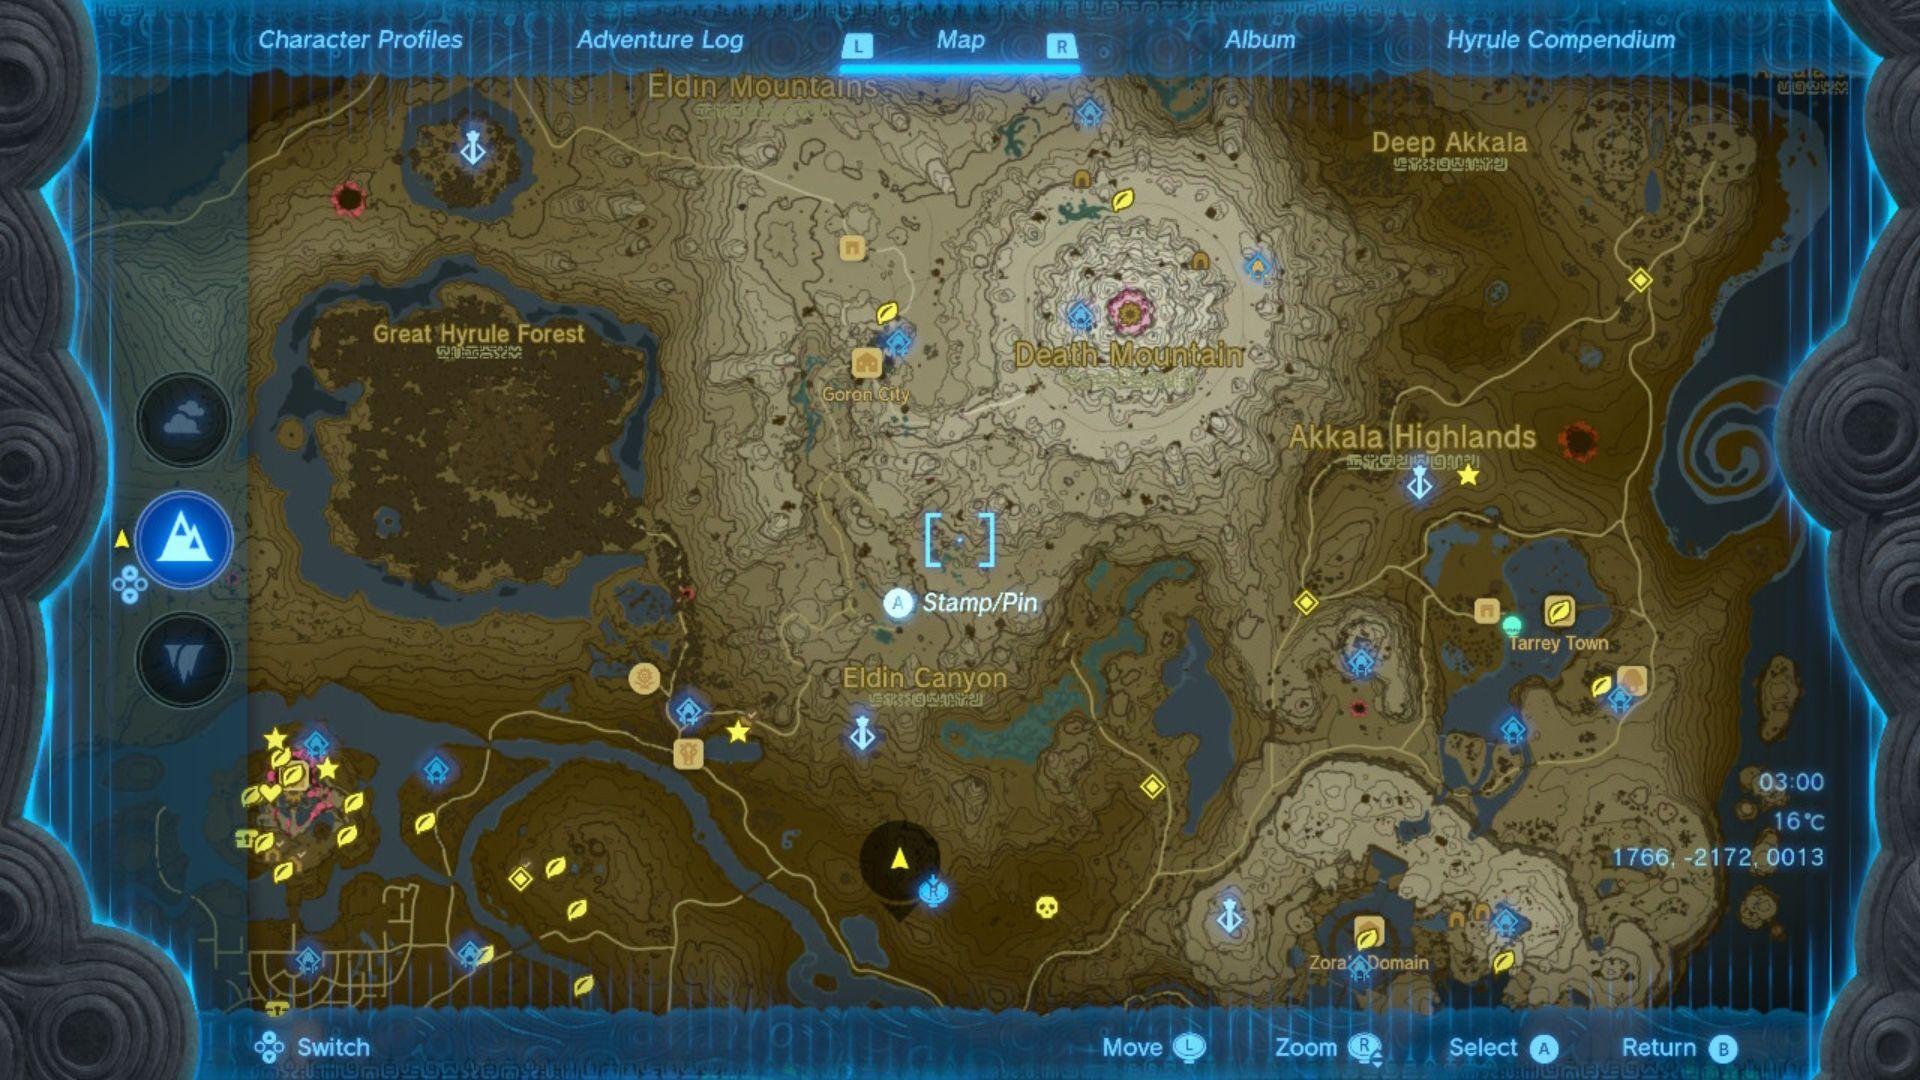 Zelda: Kapliczki Tears of the Kingdom zaznaczone żółtymi kółkami mango na brązowo-białej mapie Hyrule usianej różnymi szpilkami i znaczkami, drogami i rzekami.